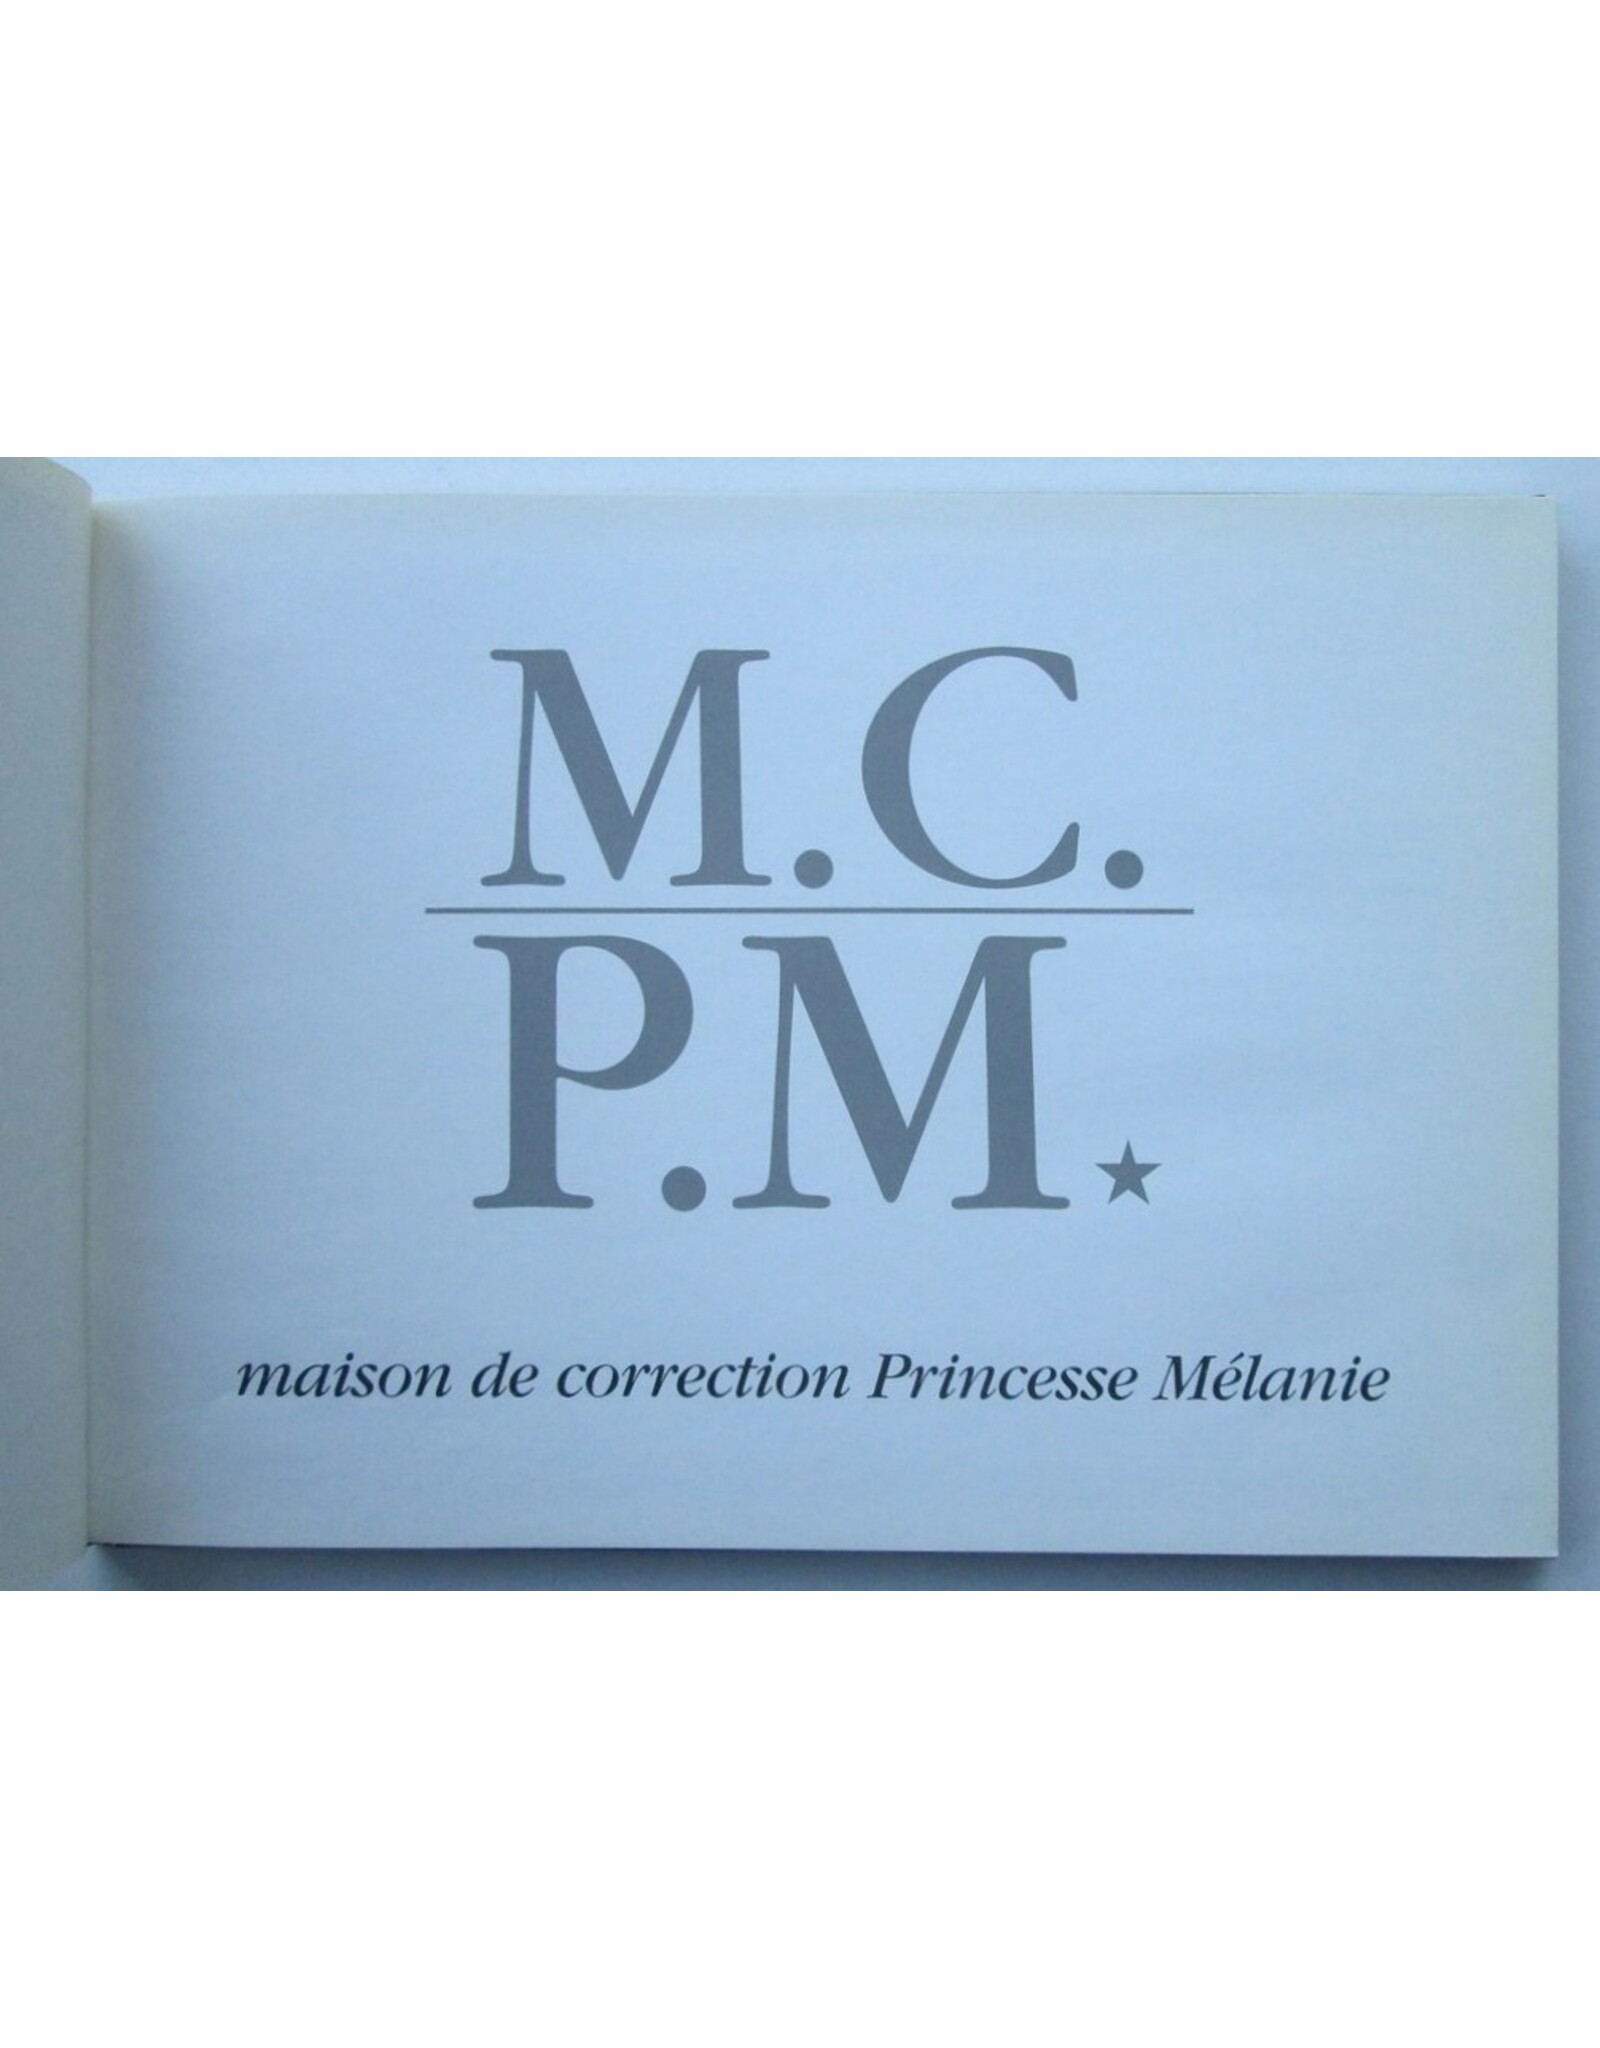 G. Pichard - M.C.P.M. Maison de correction 'Princesse Mélanie'